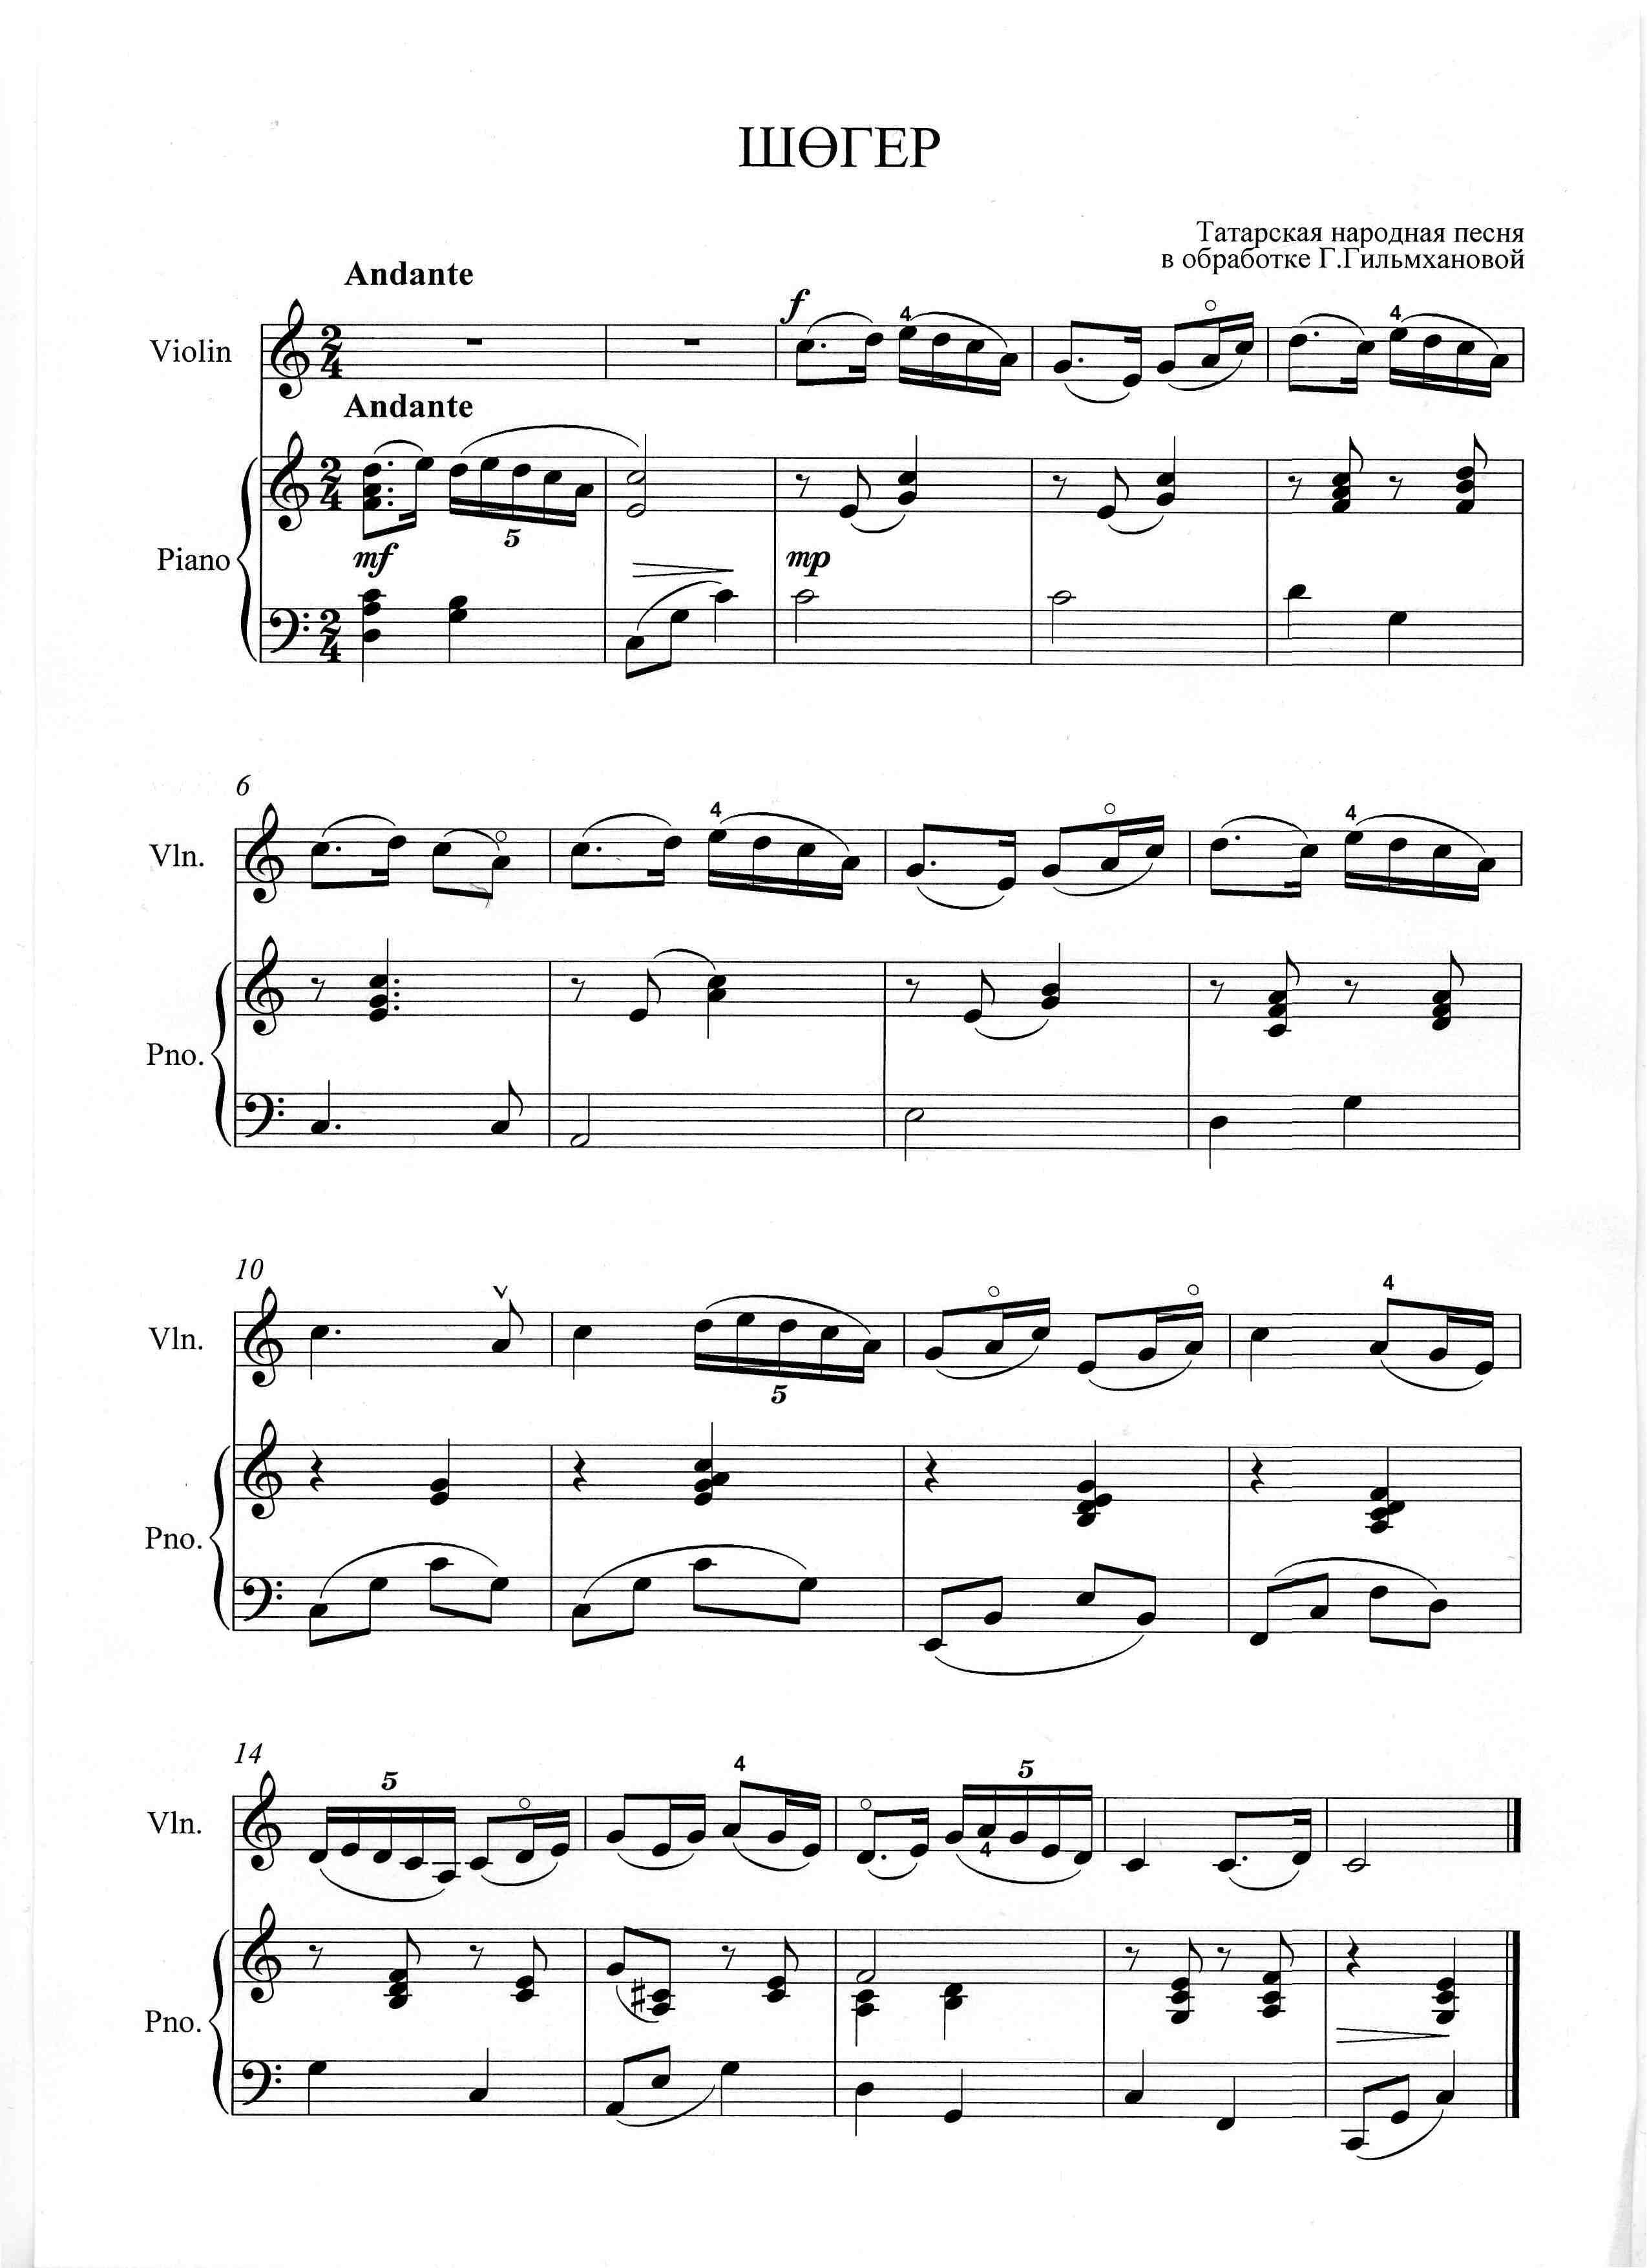 Сборник для фортепиано «Обработки татарских народных мелодий»